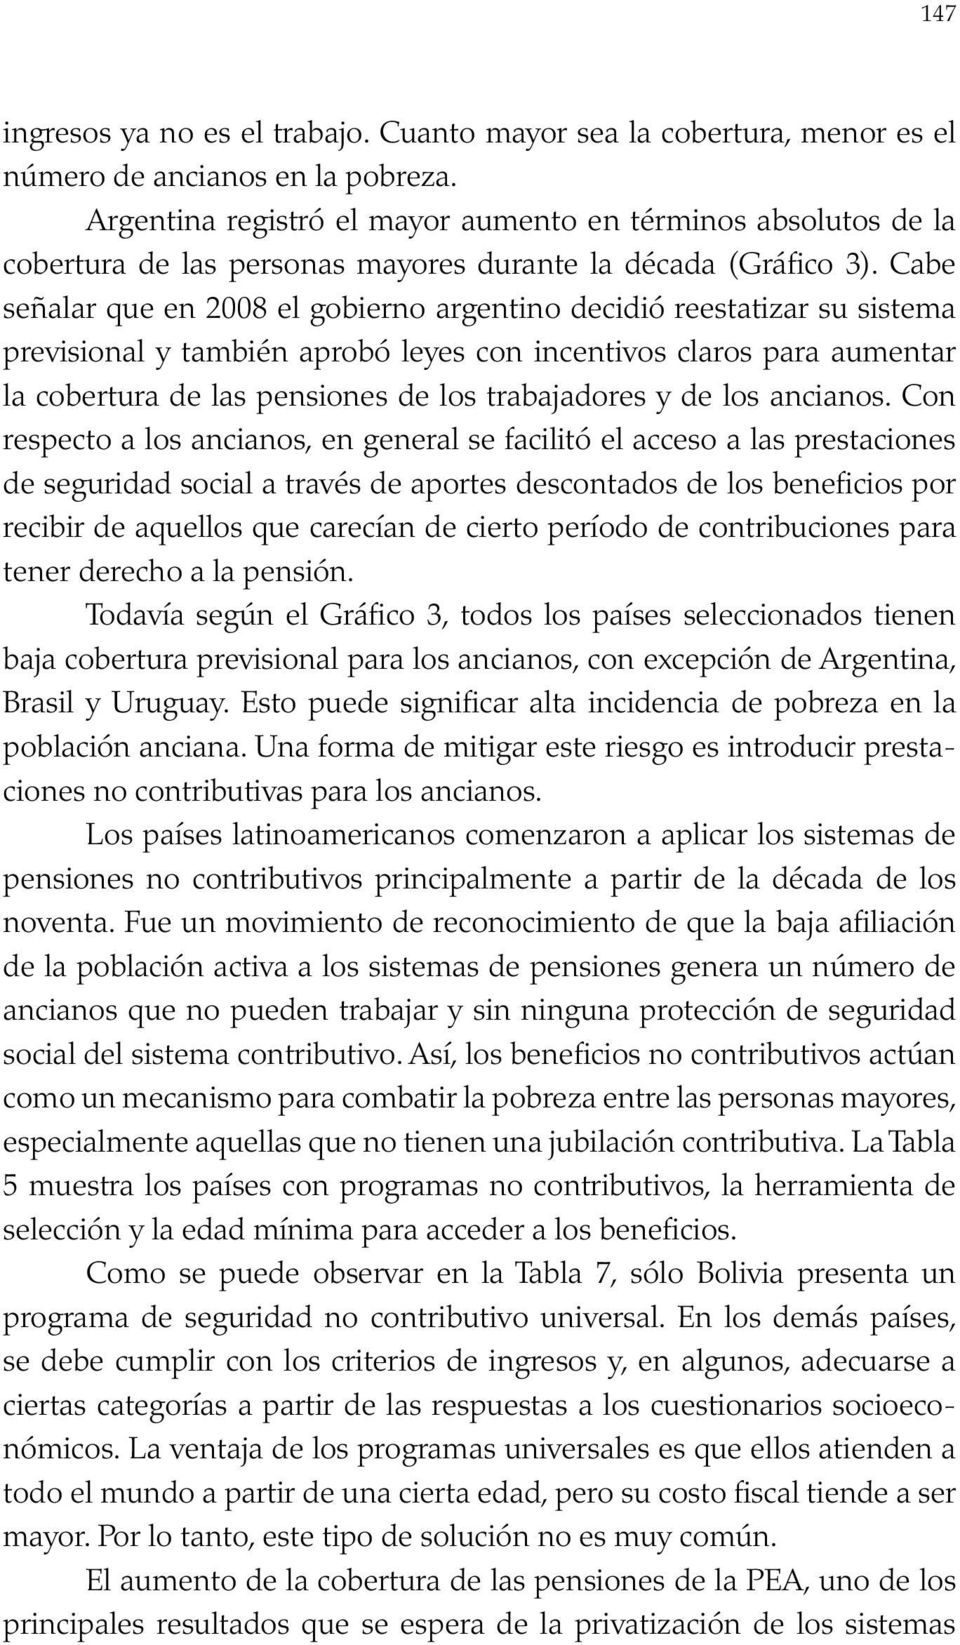 Cabe señalar que en 2008 el gobierno argentino decidió reestatizar su sistema previsional y también aprobó leyes con incentivos claros para aumentar la cobertura de las pensiones de los trabajadores